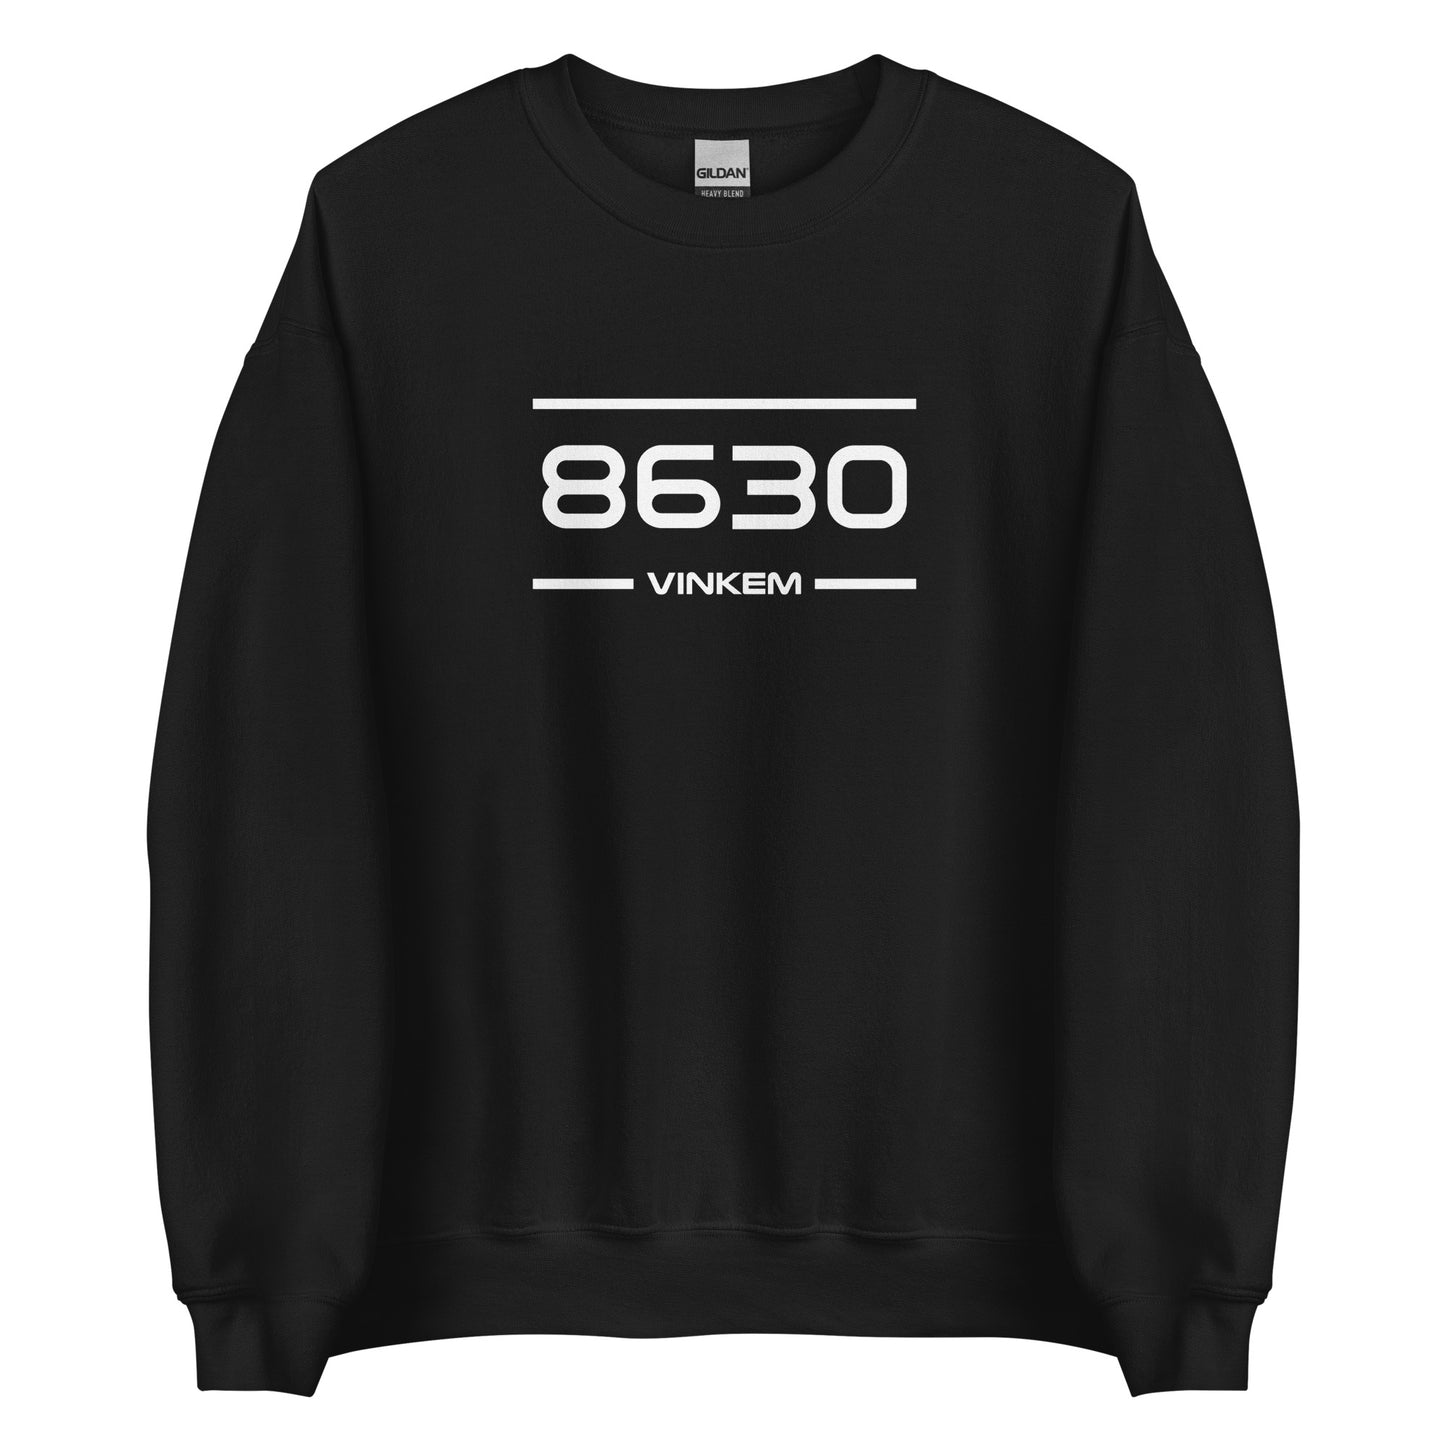 Sweater - 8630 - Vinkem (M/V)